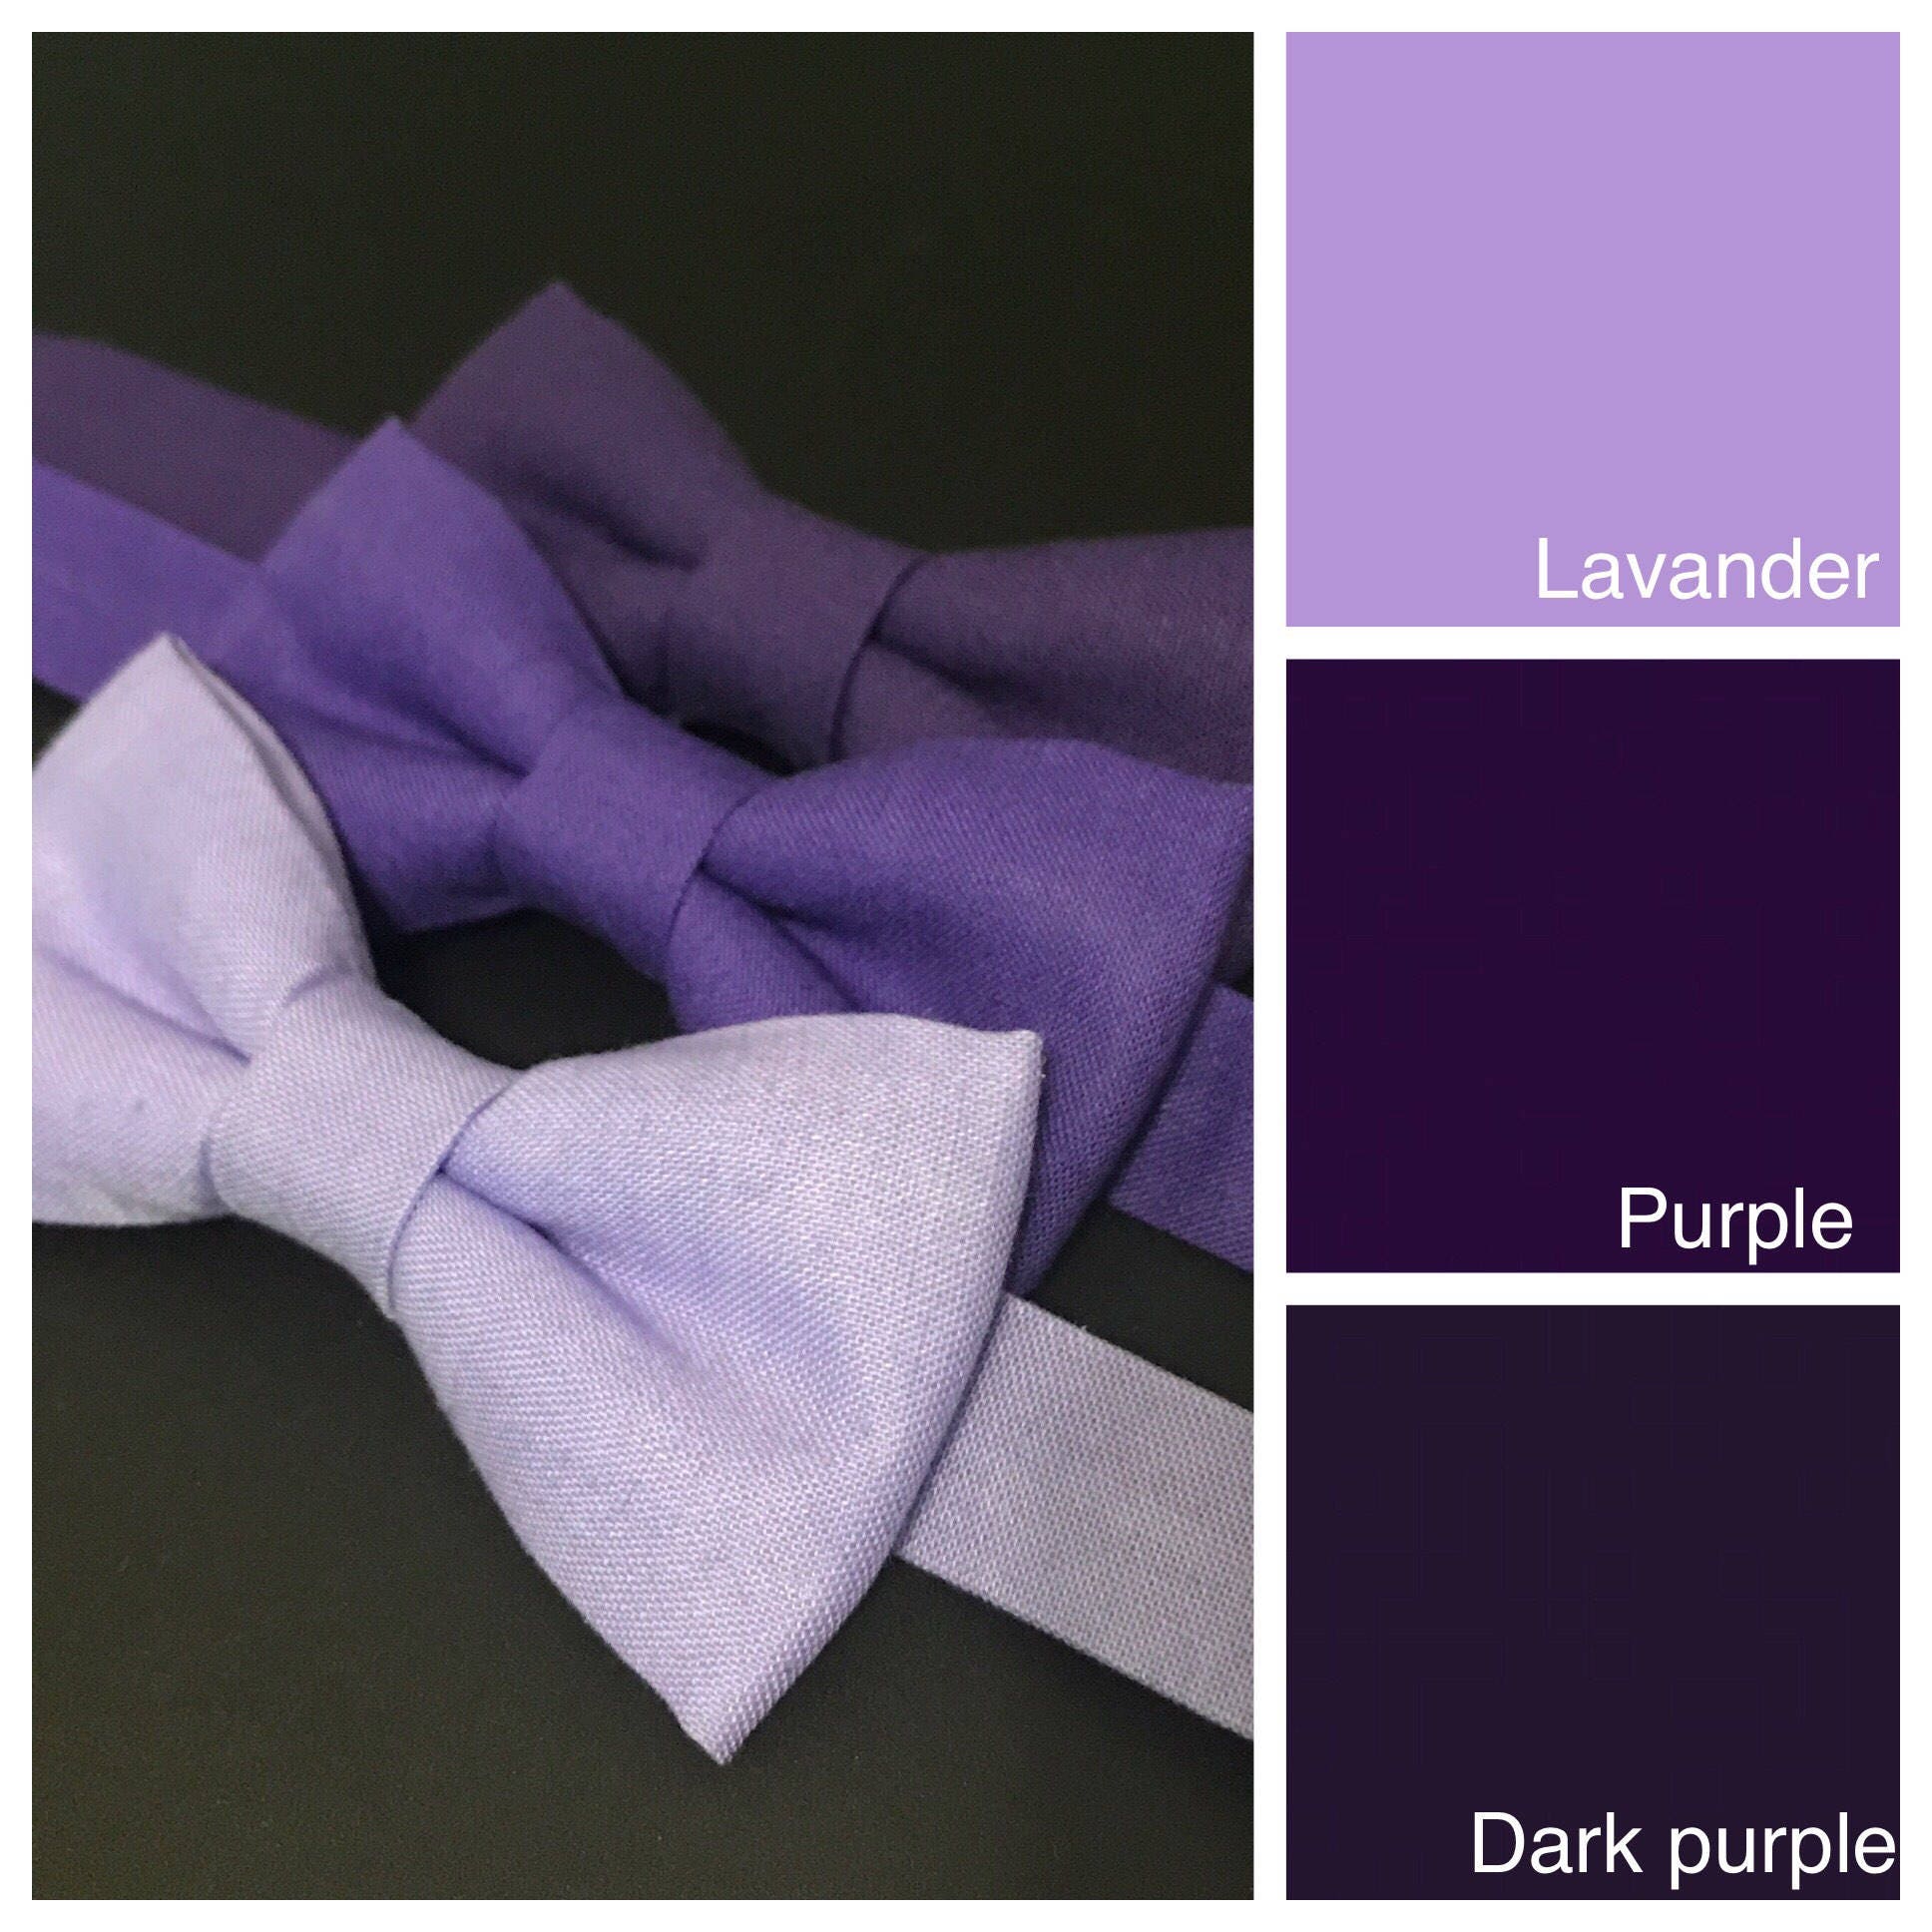  Mirage Pet Products 48-34 LV Plain Bow Tie, Lavender